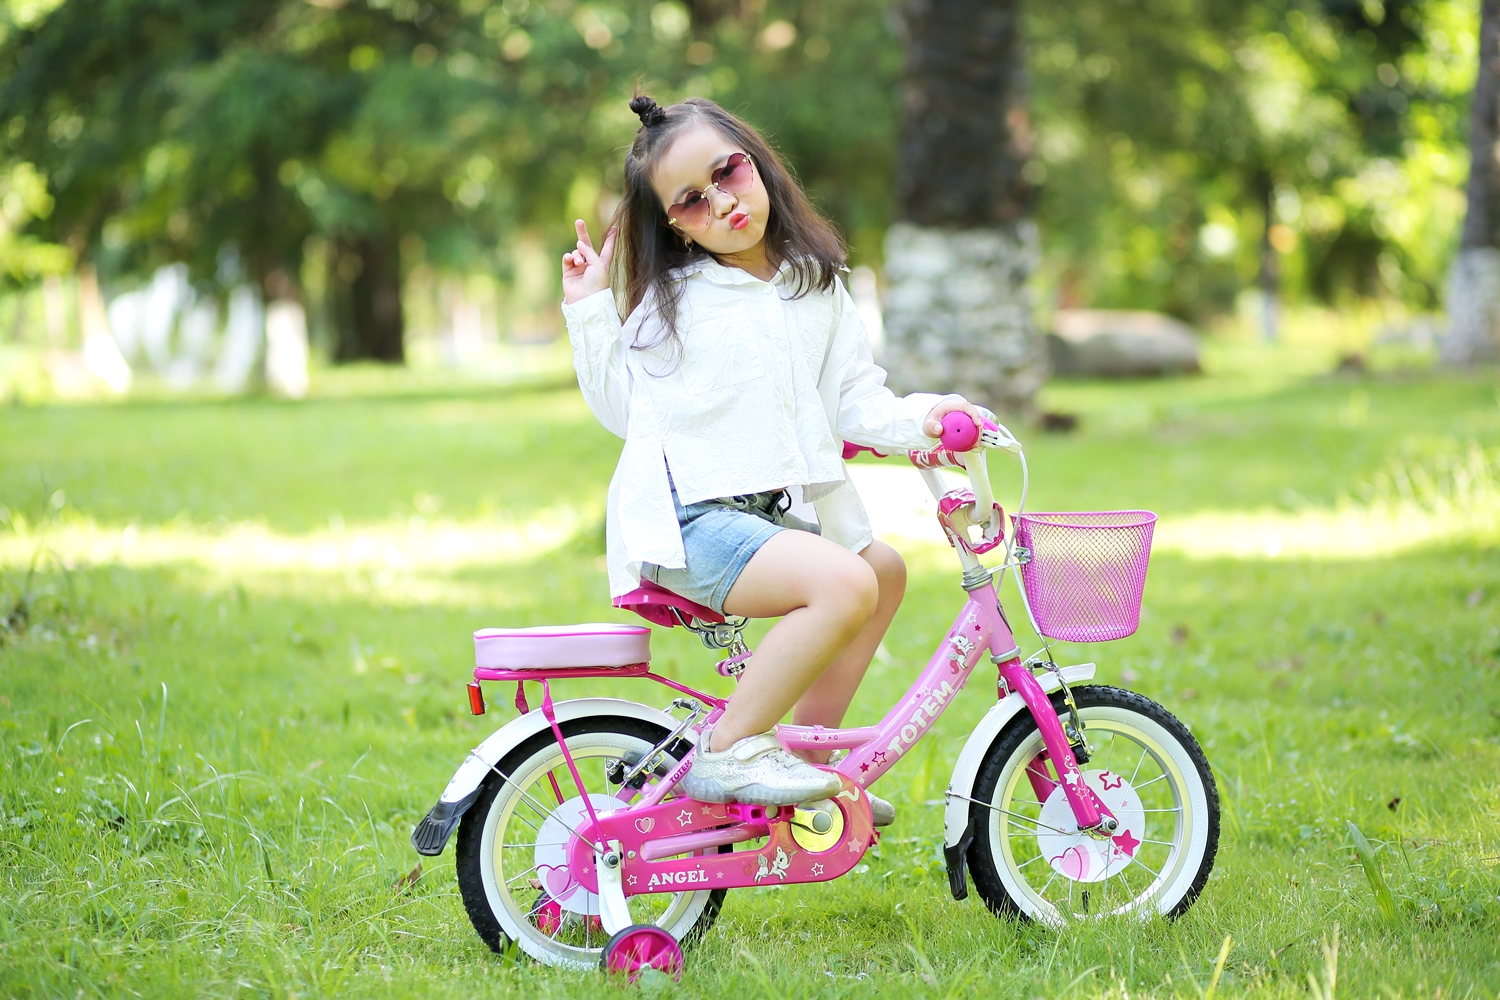 Xe đạp trẻ em không chỉ là một món đồ chơi mà còn là cách thể hiện sức khỏe và phong cách cho các bé. Xem ảnh để thấy sự tự tin và thể hiện bản thân của các bé khi đi xe đạp.